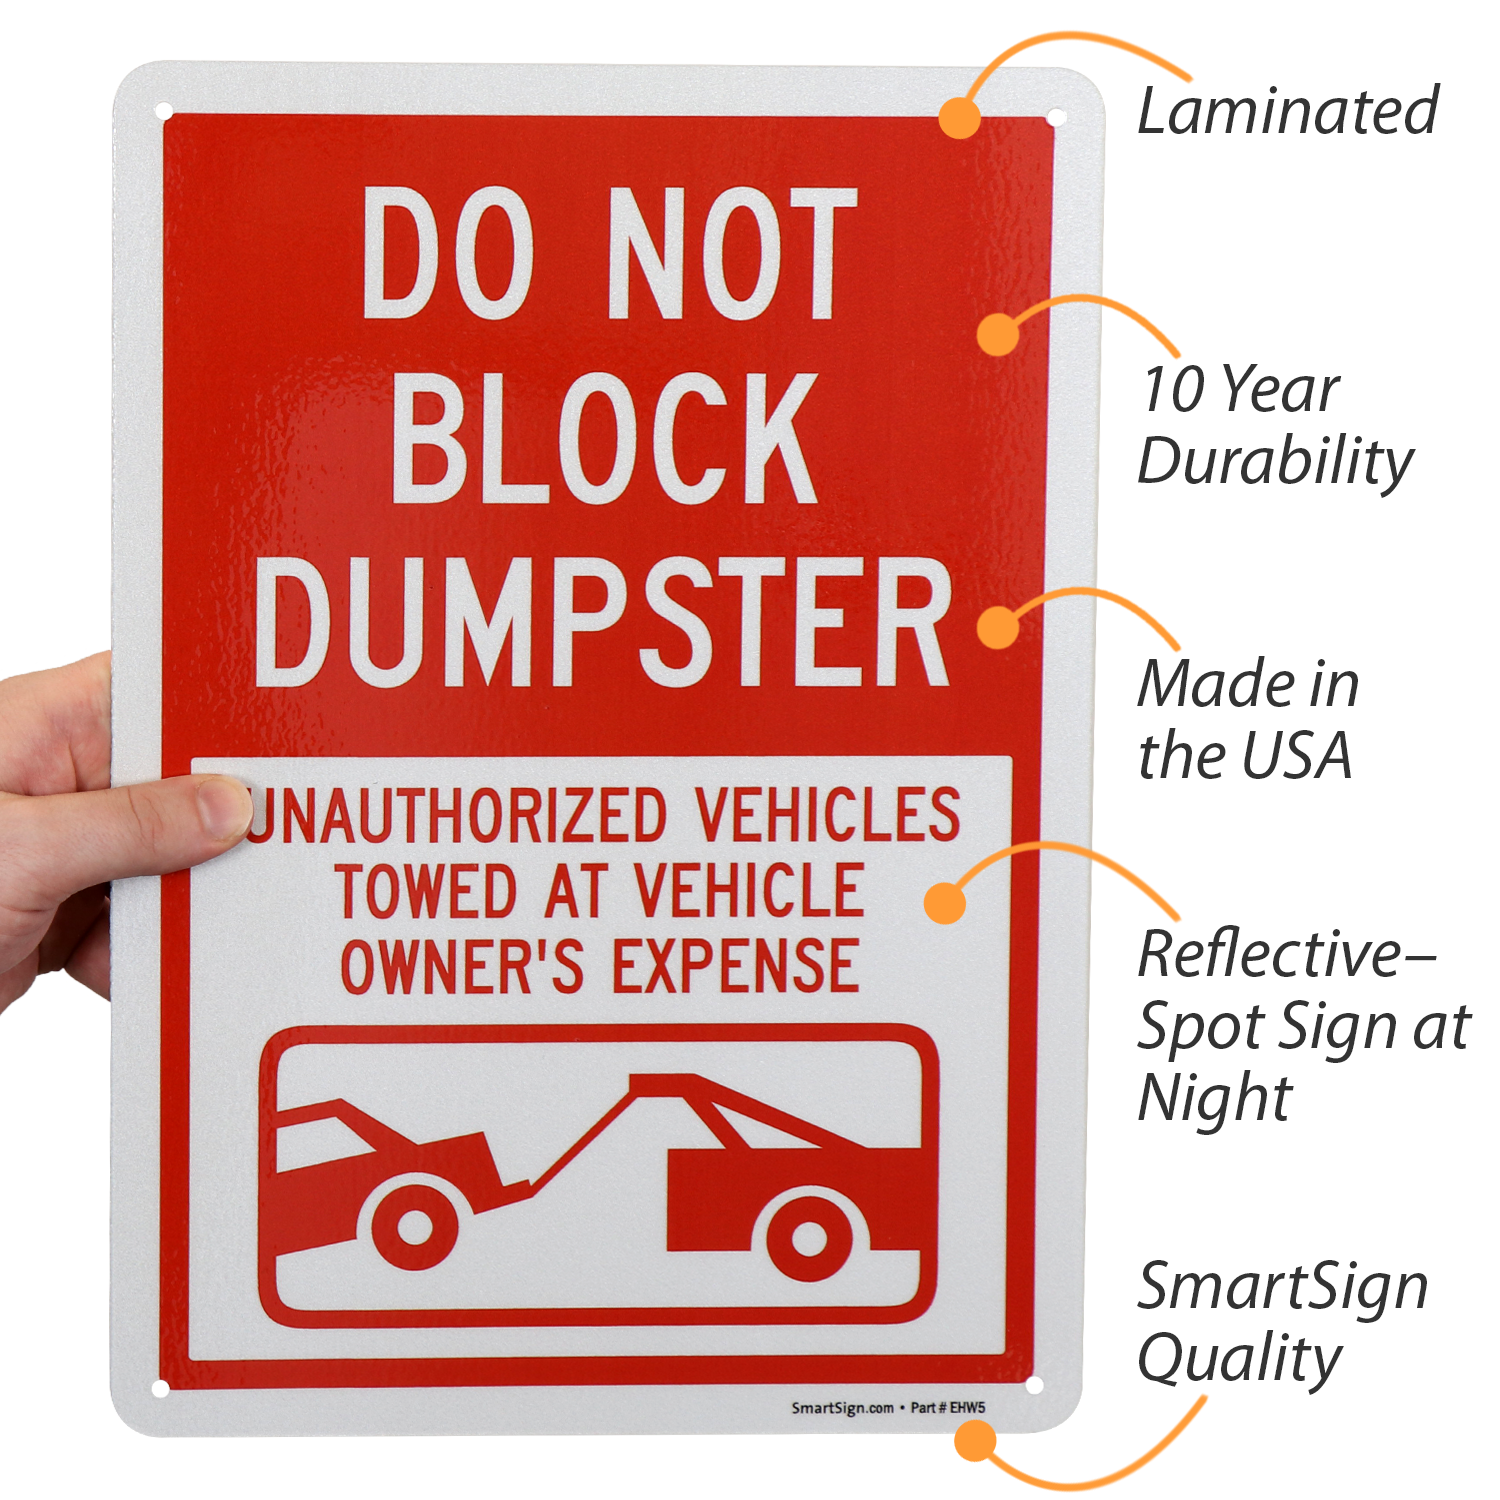 Avoid parking lot hazards, 2015-11-19